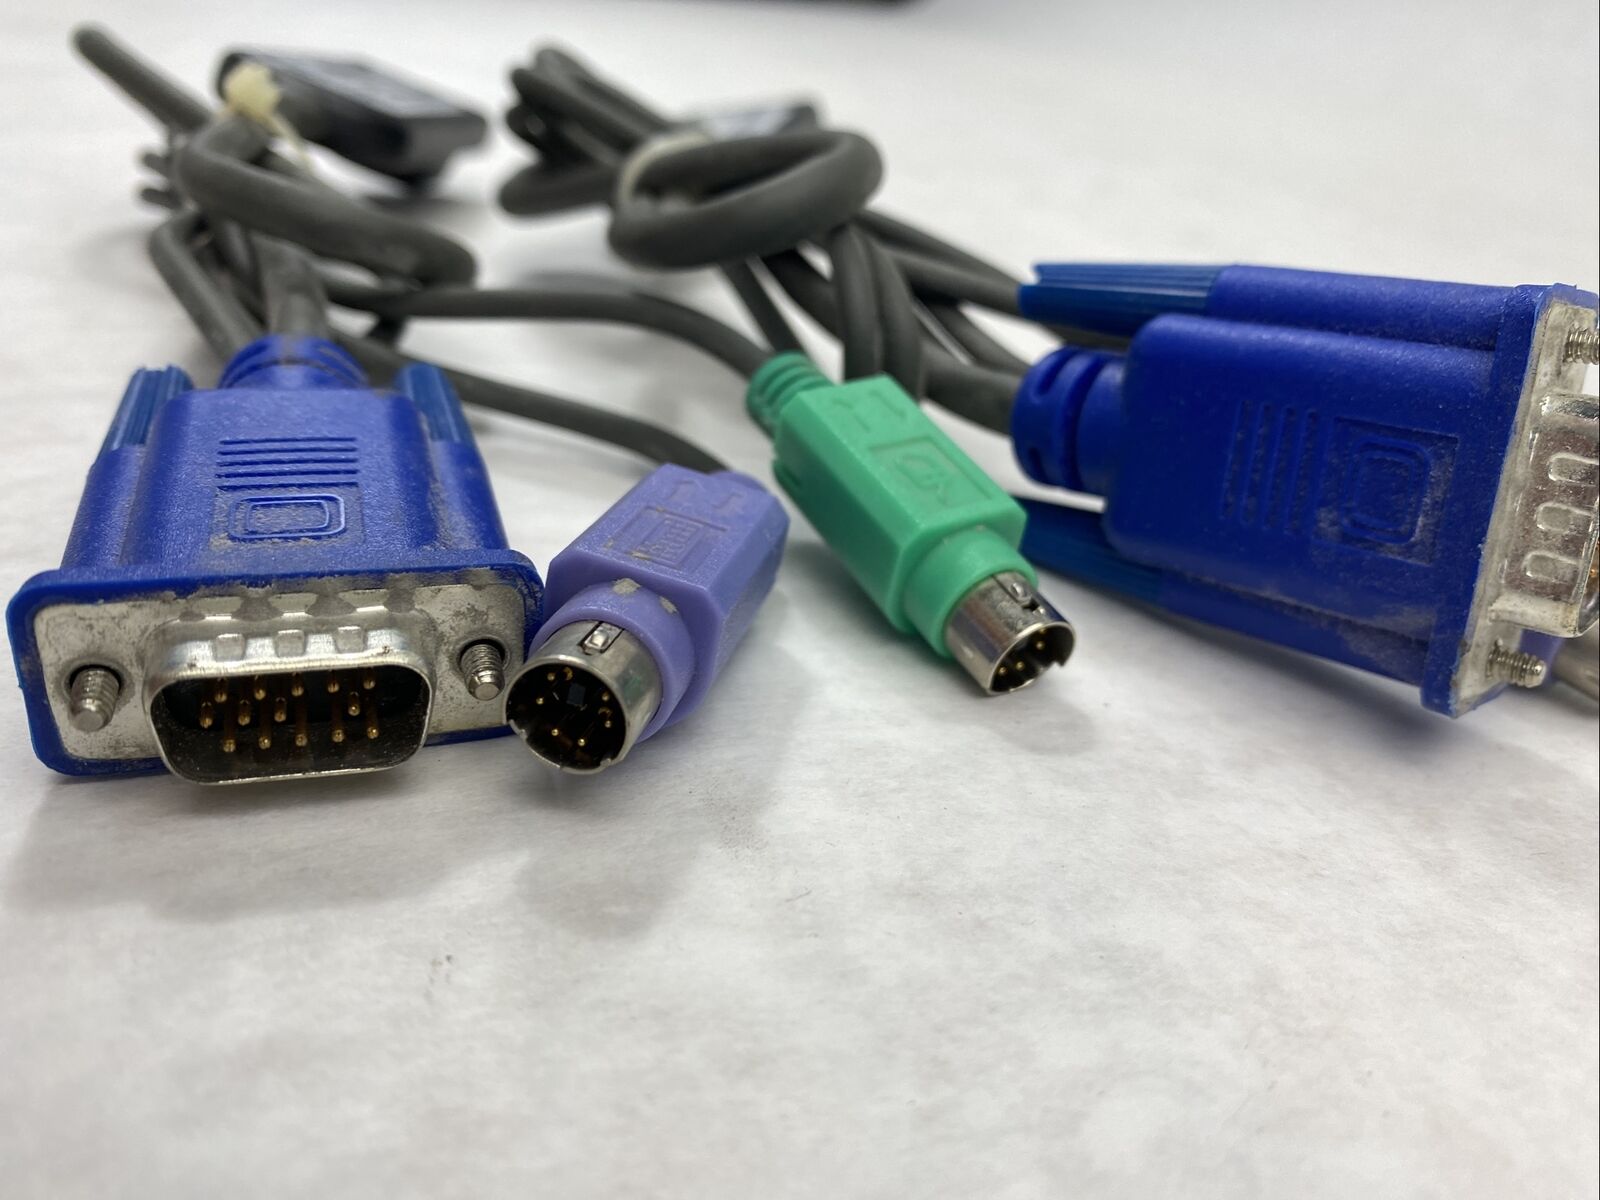 Lot ( 2 ) HP 520-290-509 KVM Interface Adapter Cable PLX1-3009 VGA PS/2